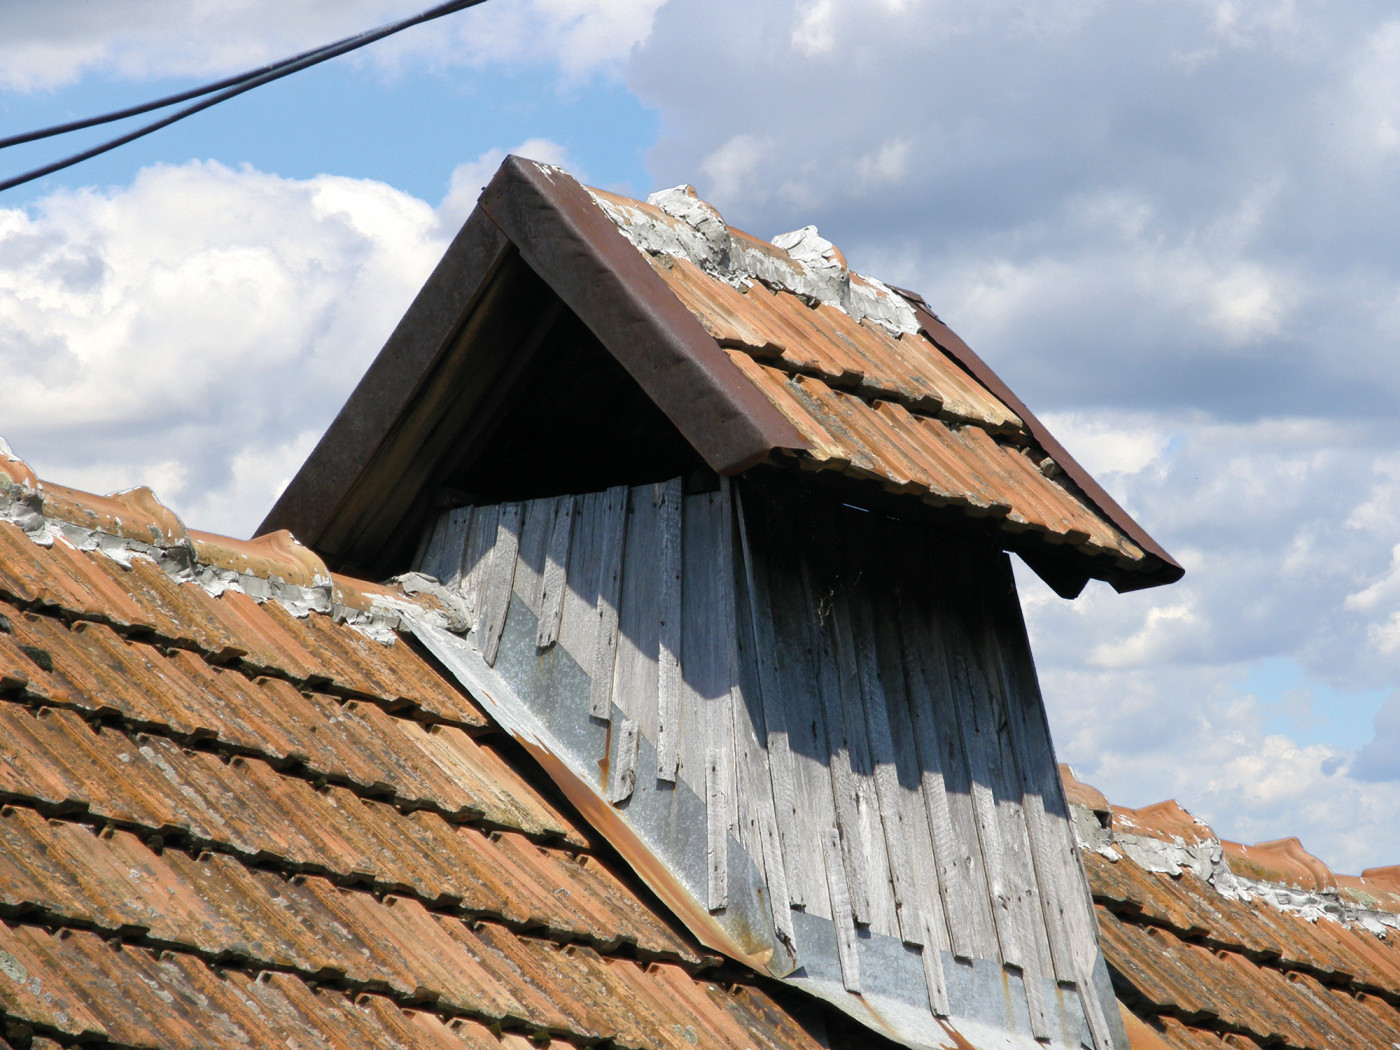 Coșul de deasupra acoperișului este din lemn, completat cu două șipci, care apărau coșul de posibilele stricăciuni cauzate de vânt.